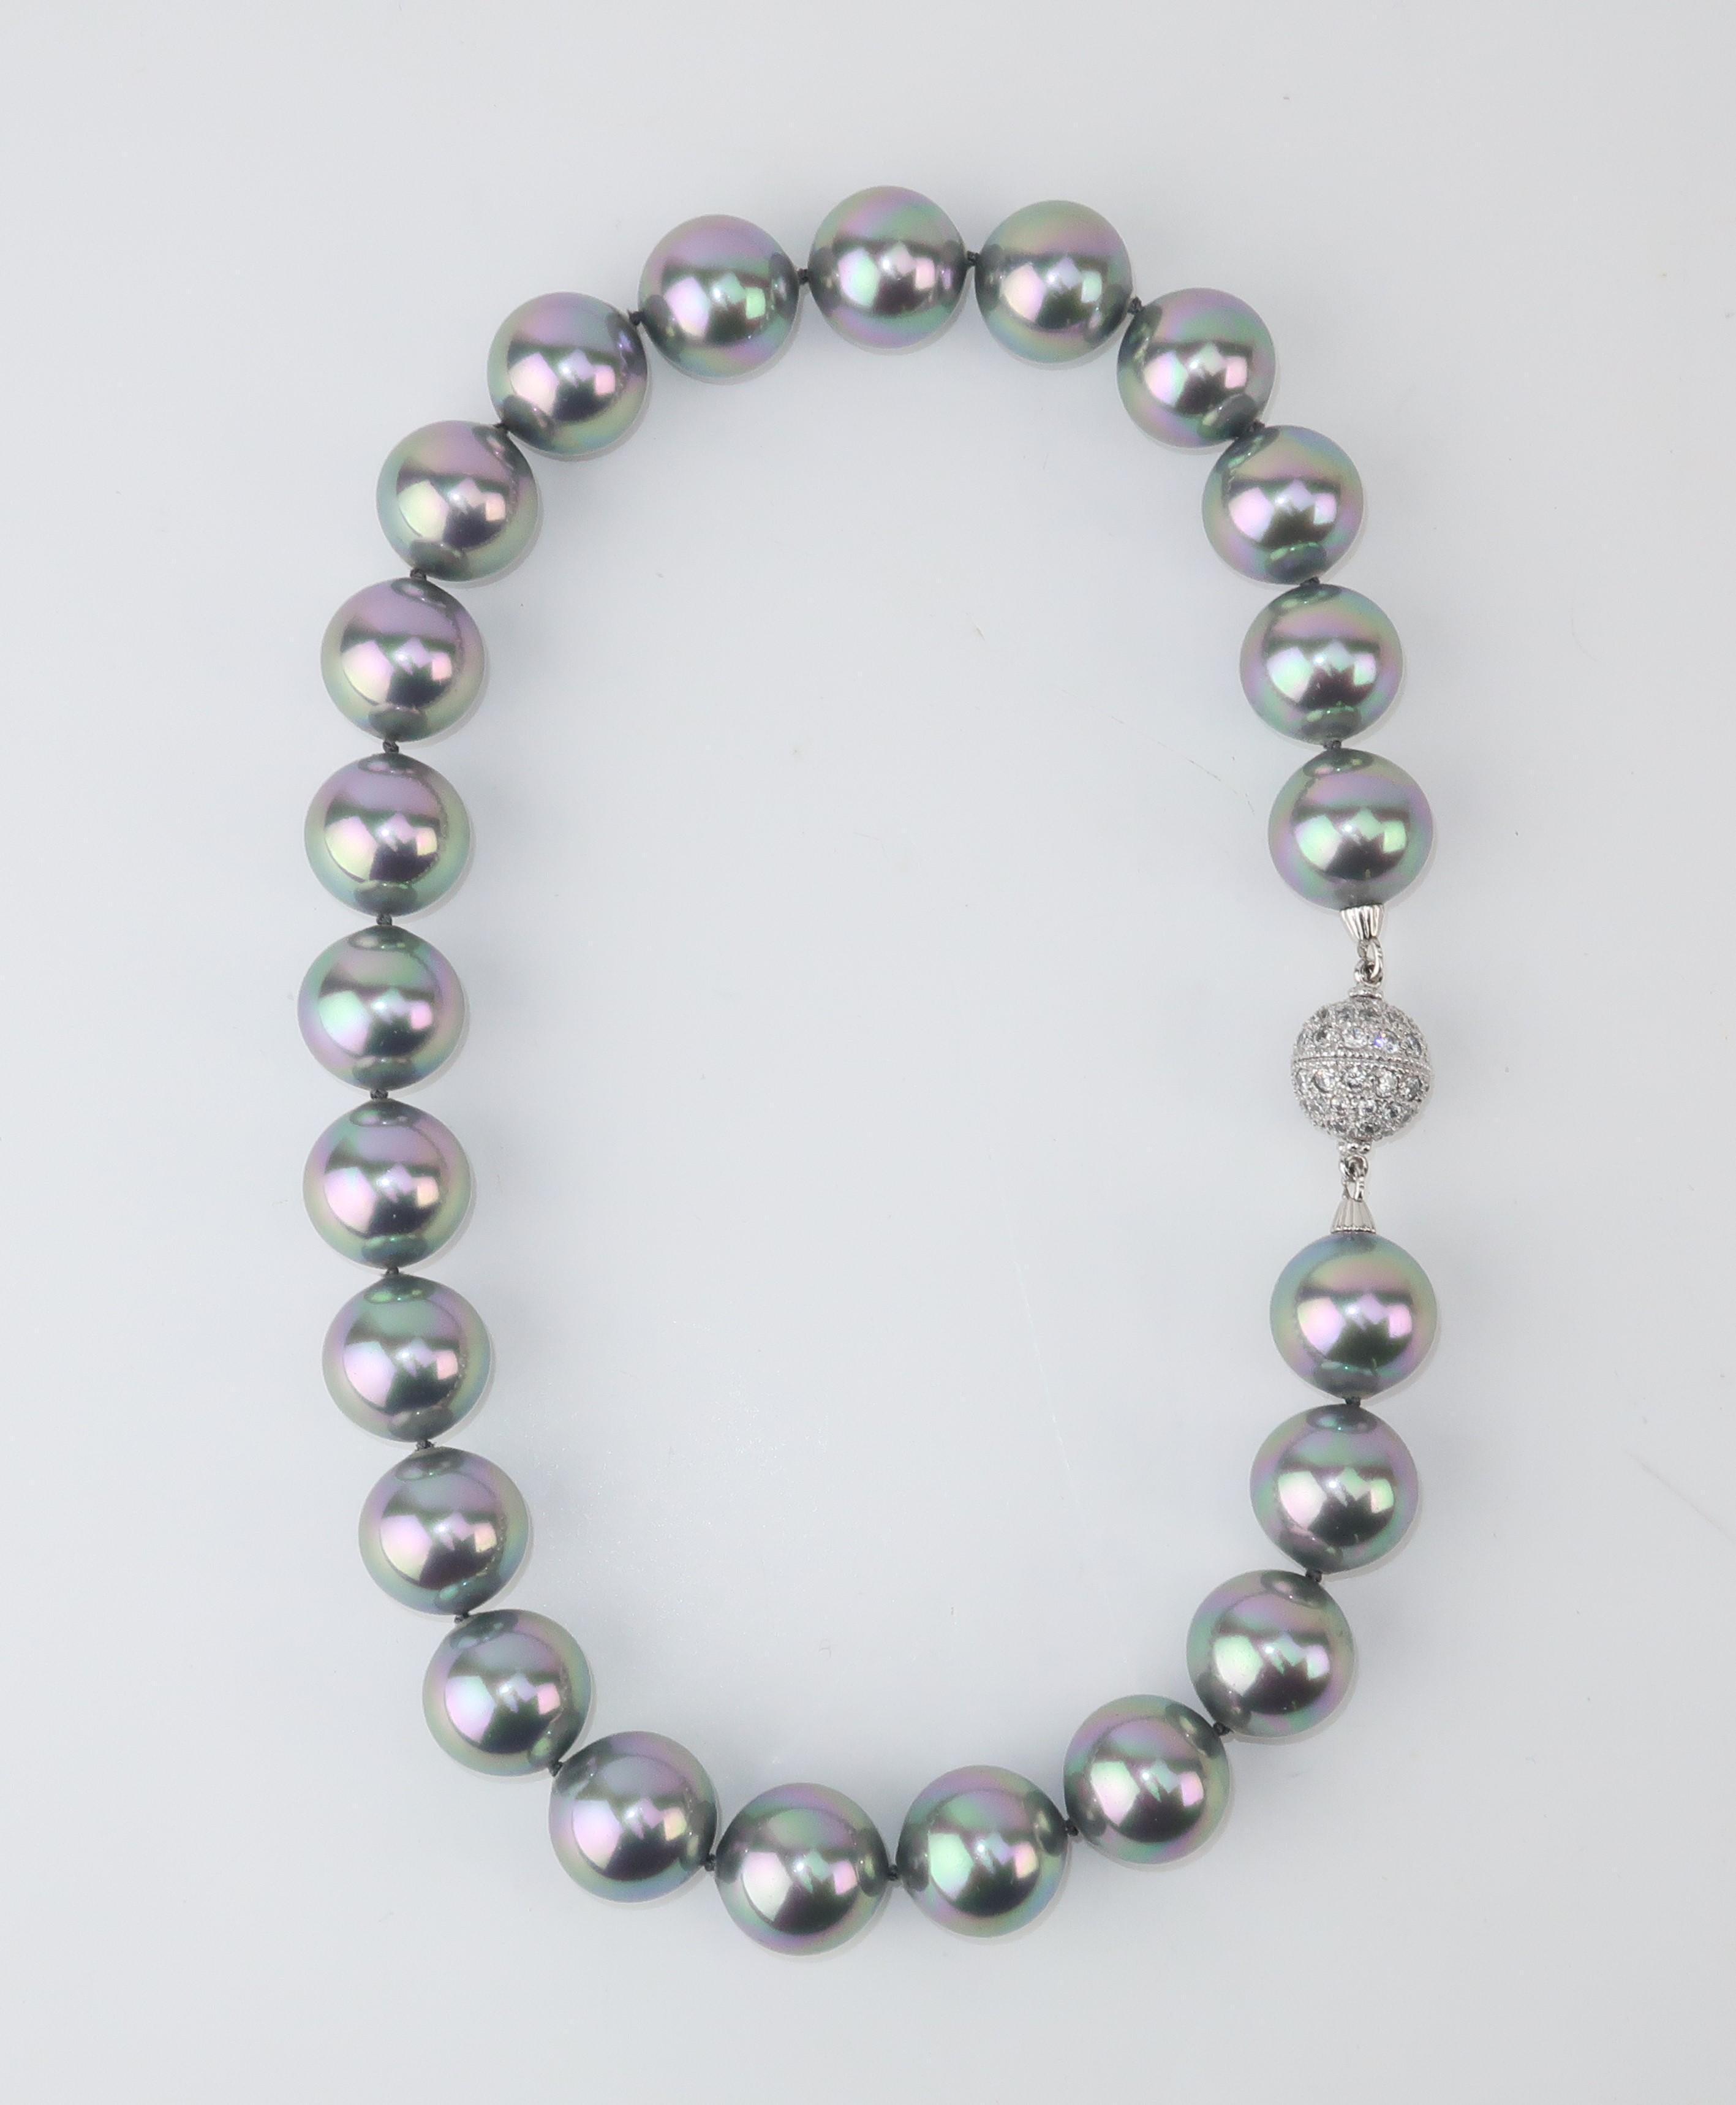 Faux fabuleux !  Un élégant collier de grandes perles grises avec une fermeture incrustée de strass en cristal.  Les perles ont un beau lustre avec juste un soupçon de rose, parfait pour ajouter un éclat doux.  L'intérieur de la fermeture semble